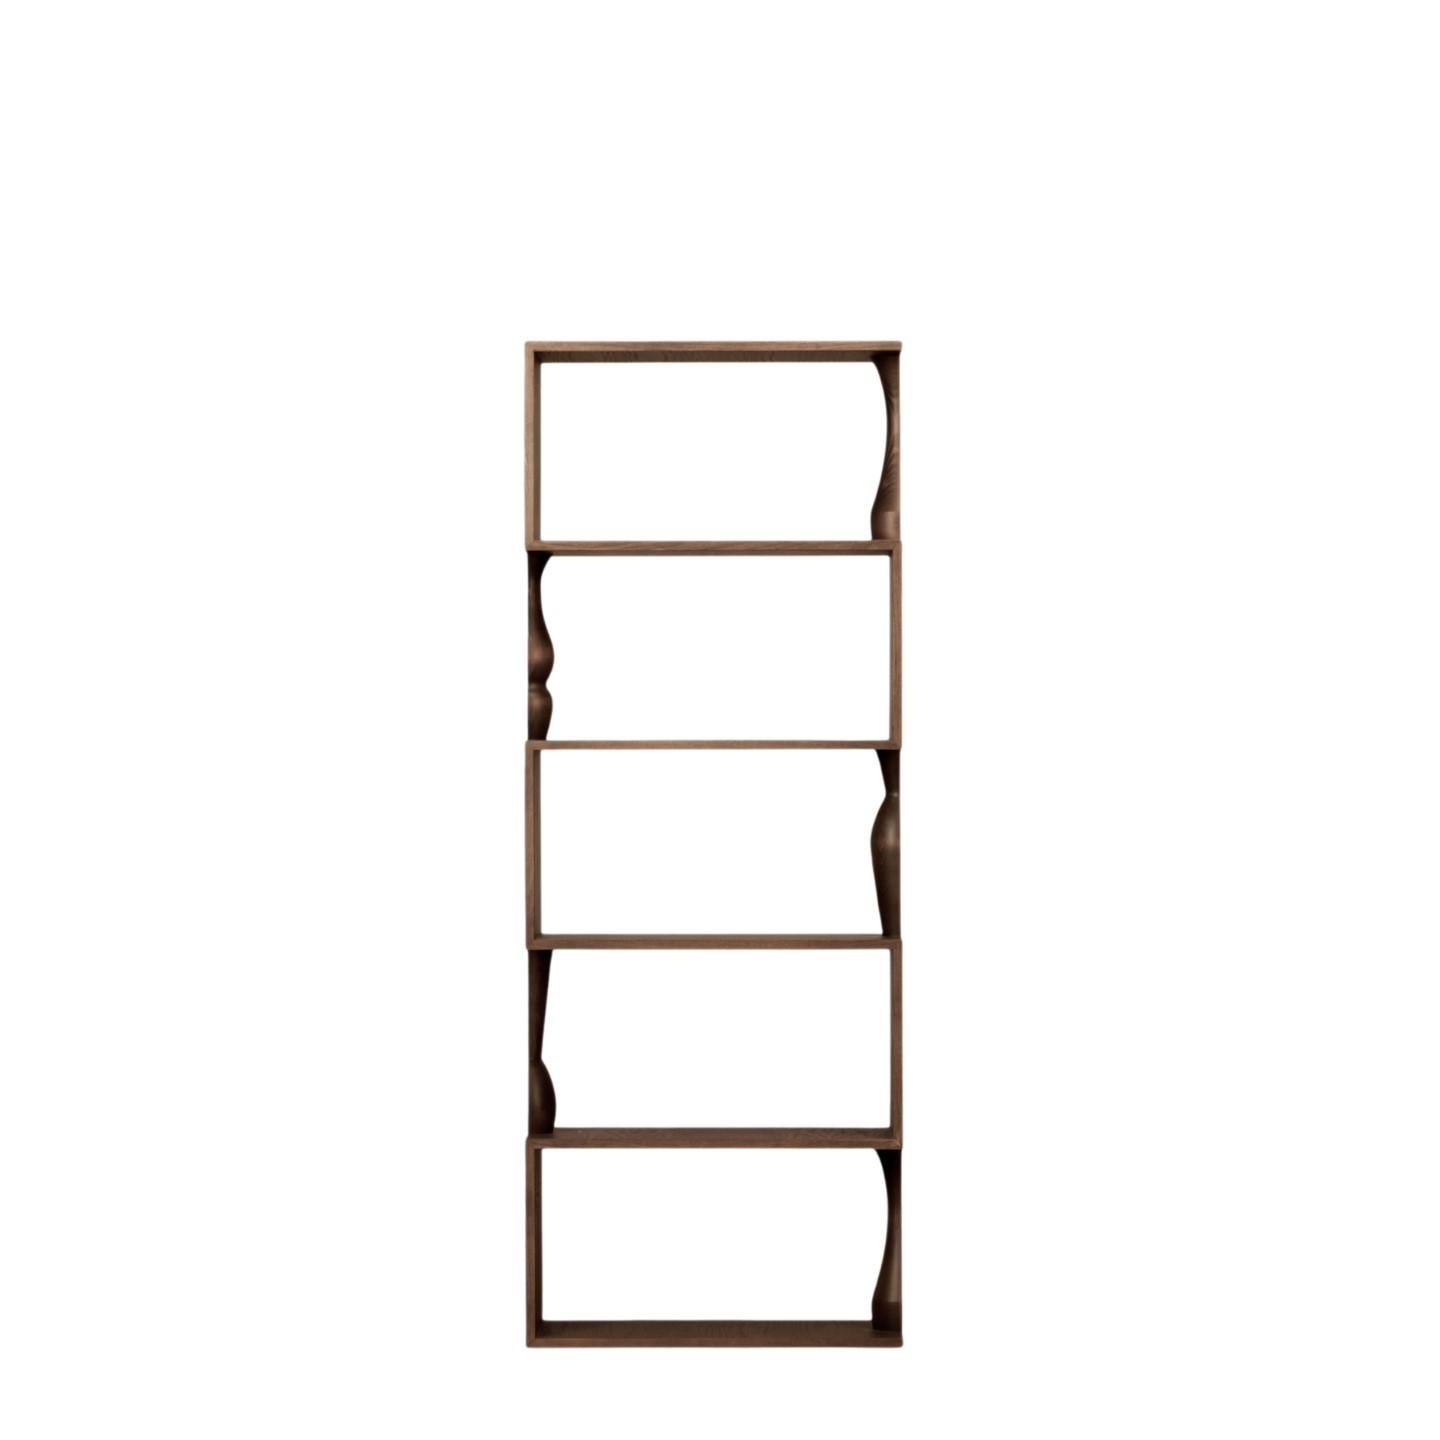 Zeitgenössisches Bücherregal aus Eschenholz mit Holzeinlegeböden, gekennzeichnet durch handgedrechselte Säulen, die mit einem anderen Element gekoppelt werden können, wodurch eine komplette gedrechselte Vase entsteht
entworfen von Itamar